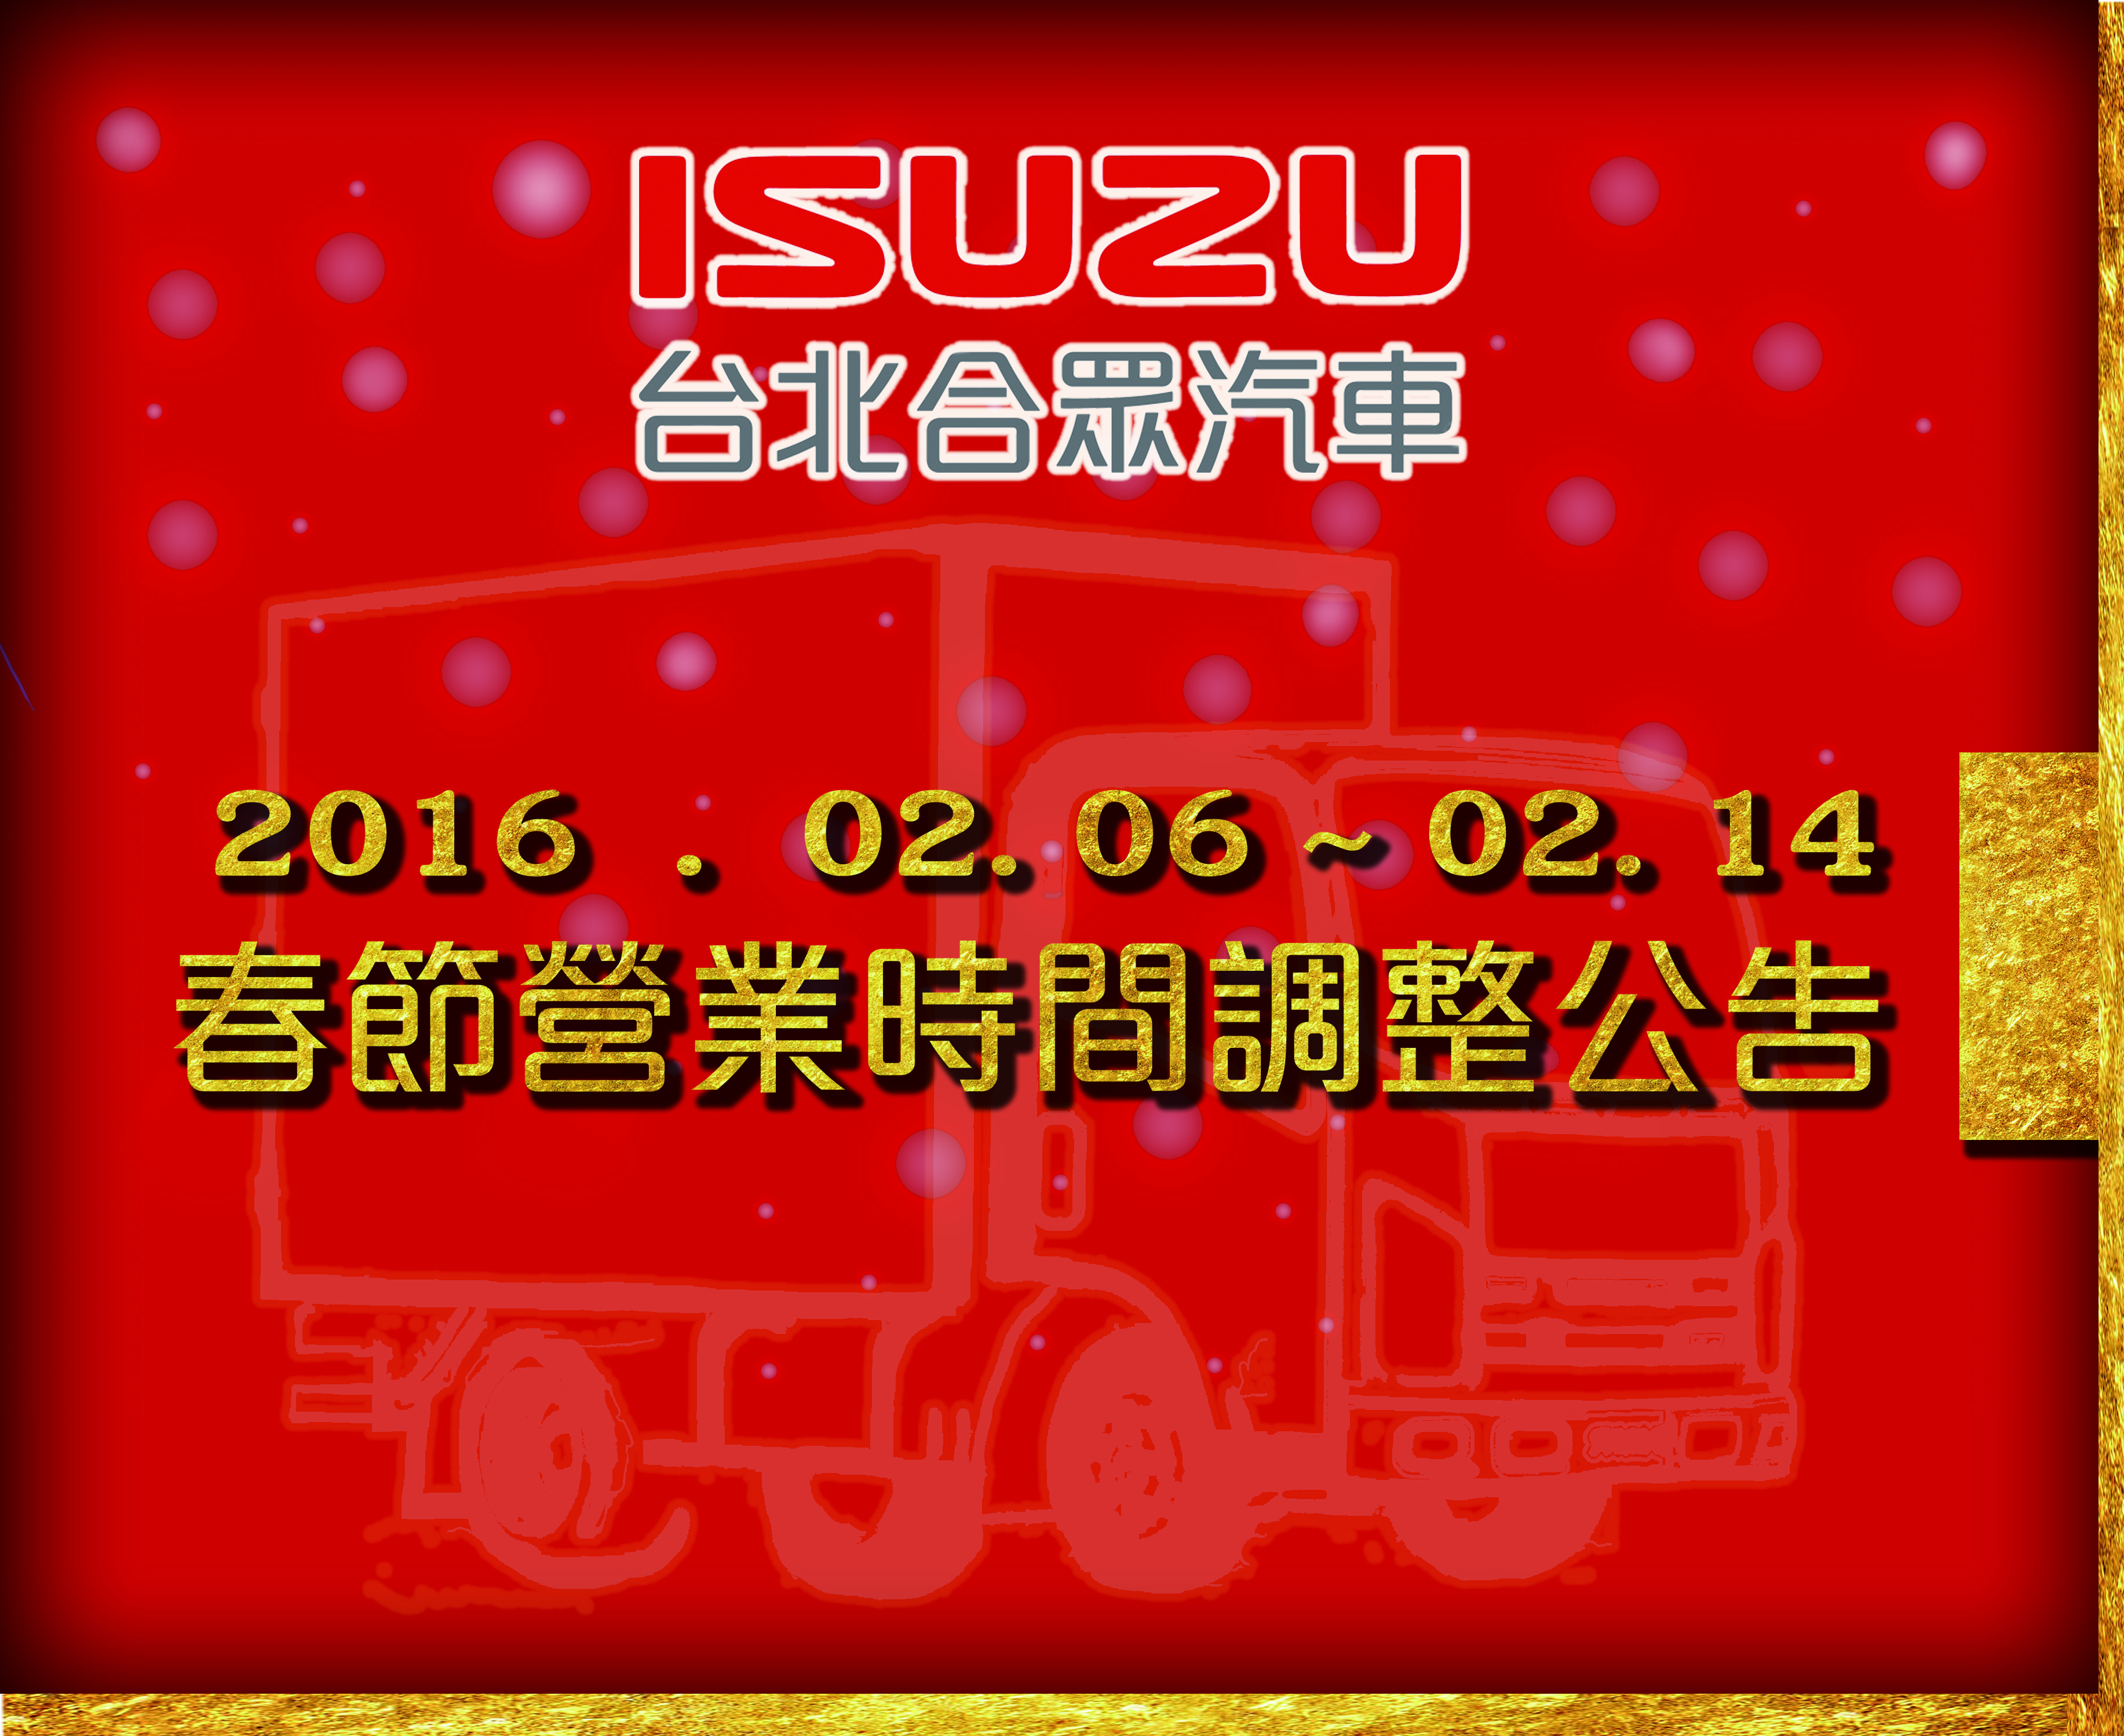 whatsnew | ISUZU - 台北合眾汽車有限公司